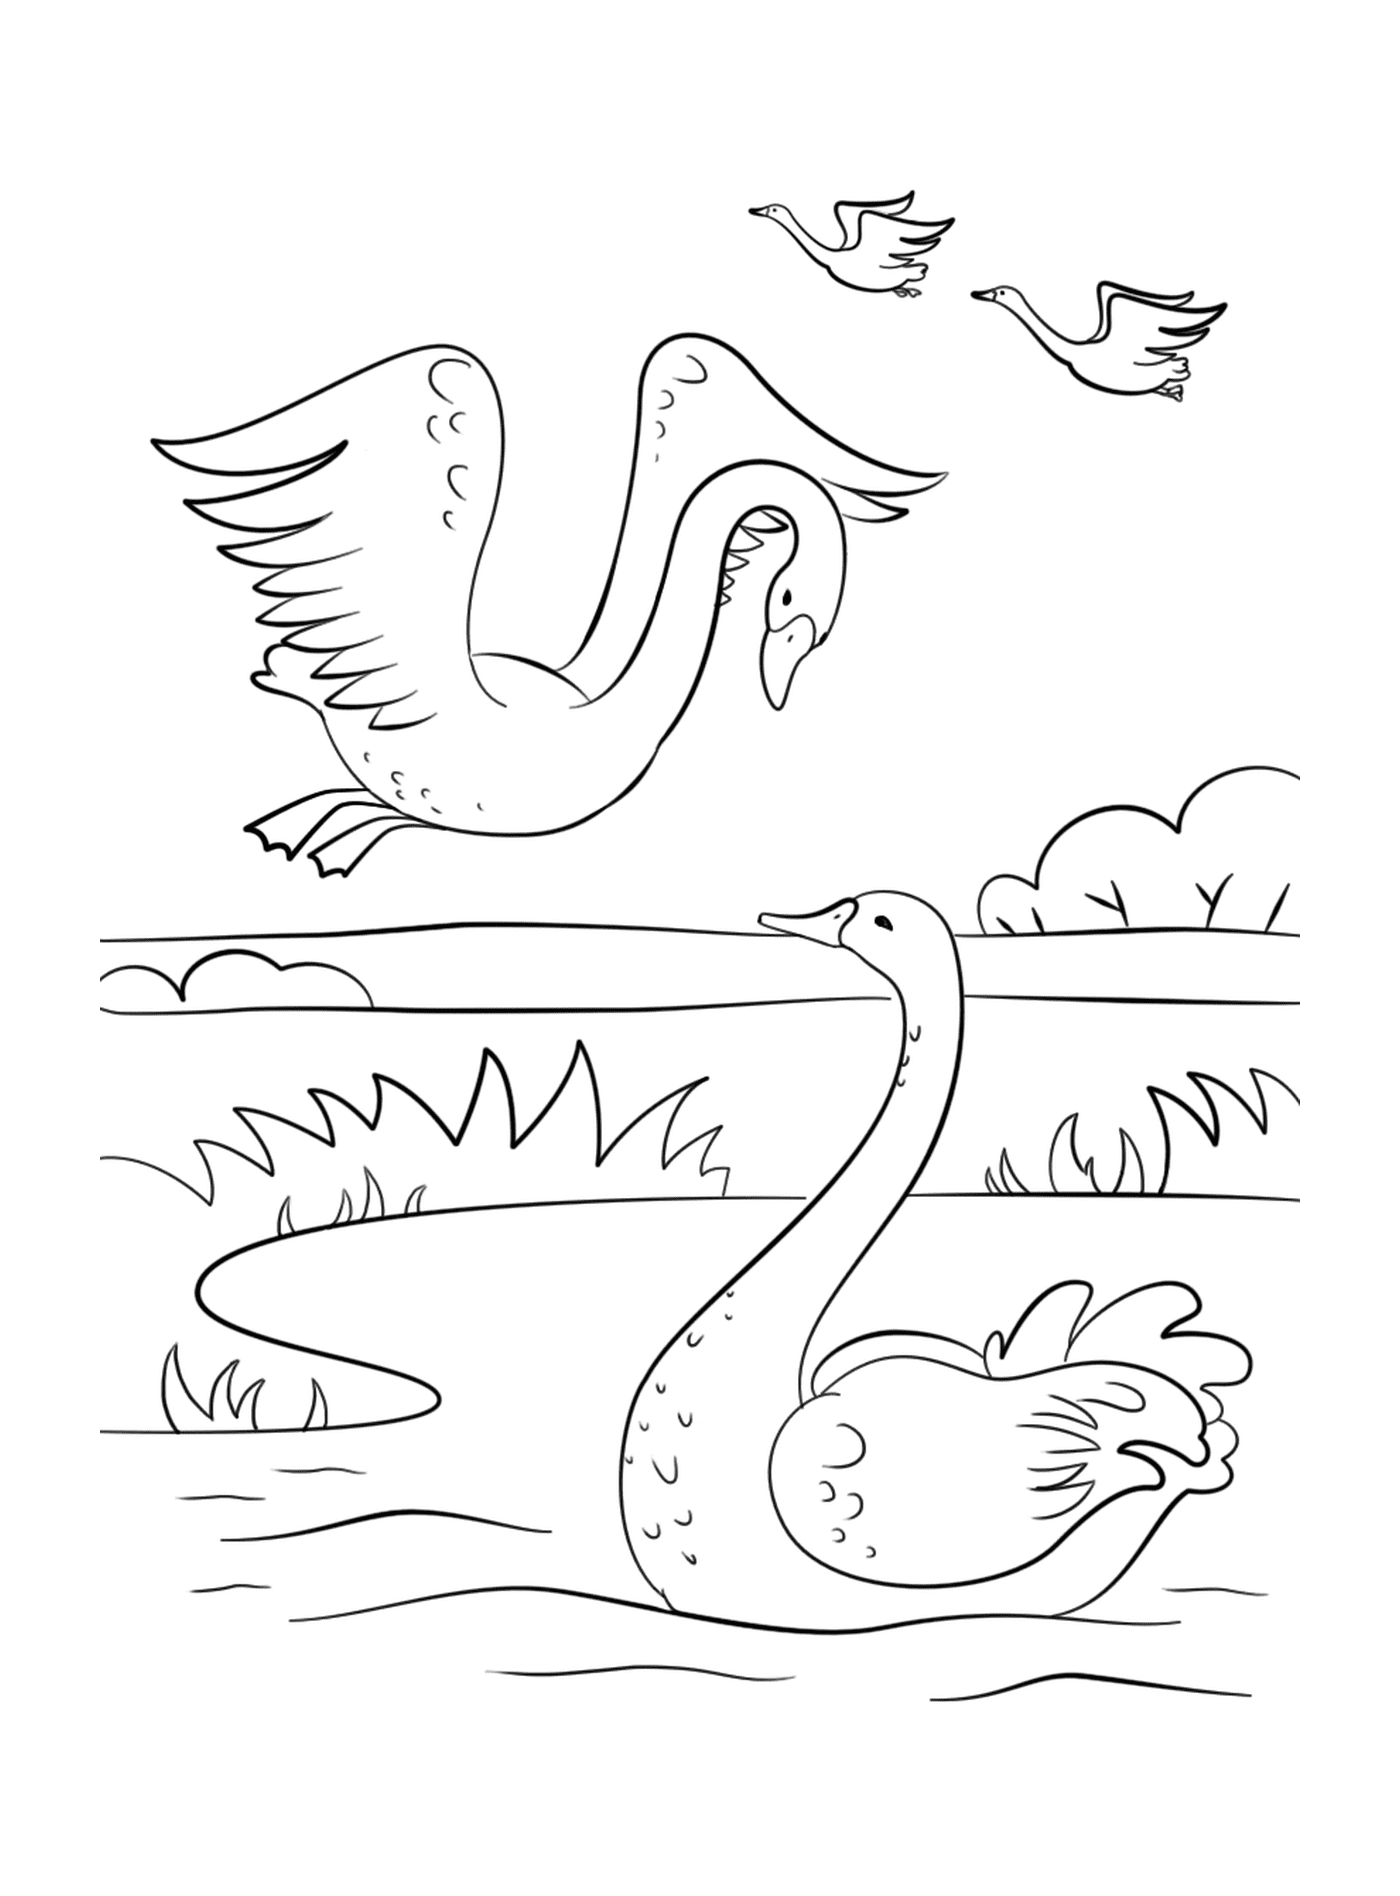  Um cisne e um ganso nadando em um lago 